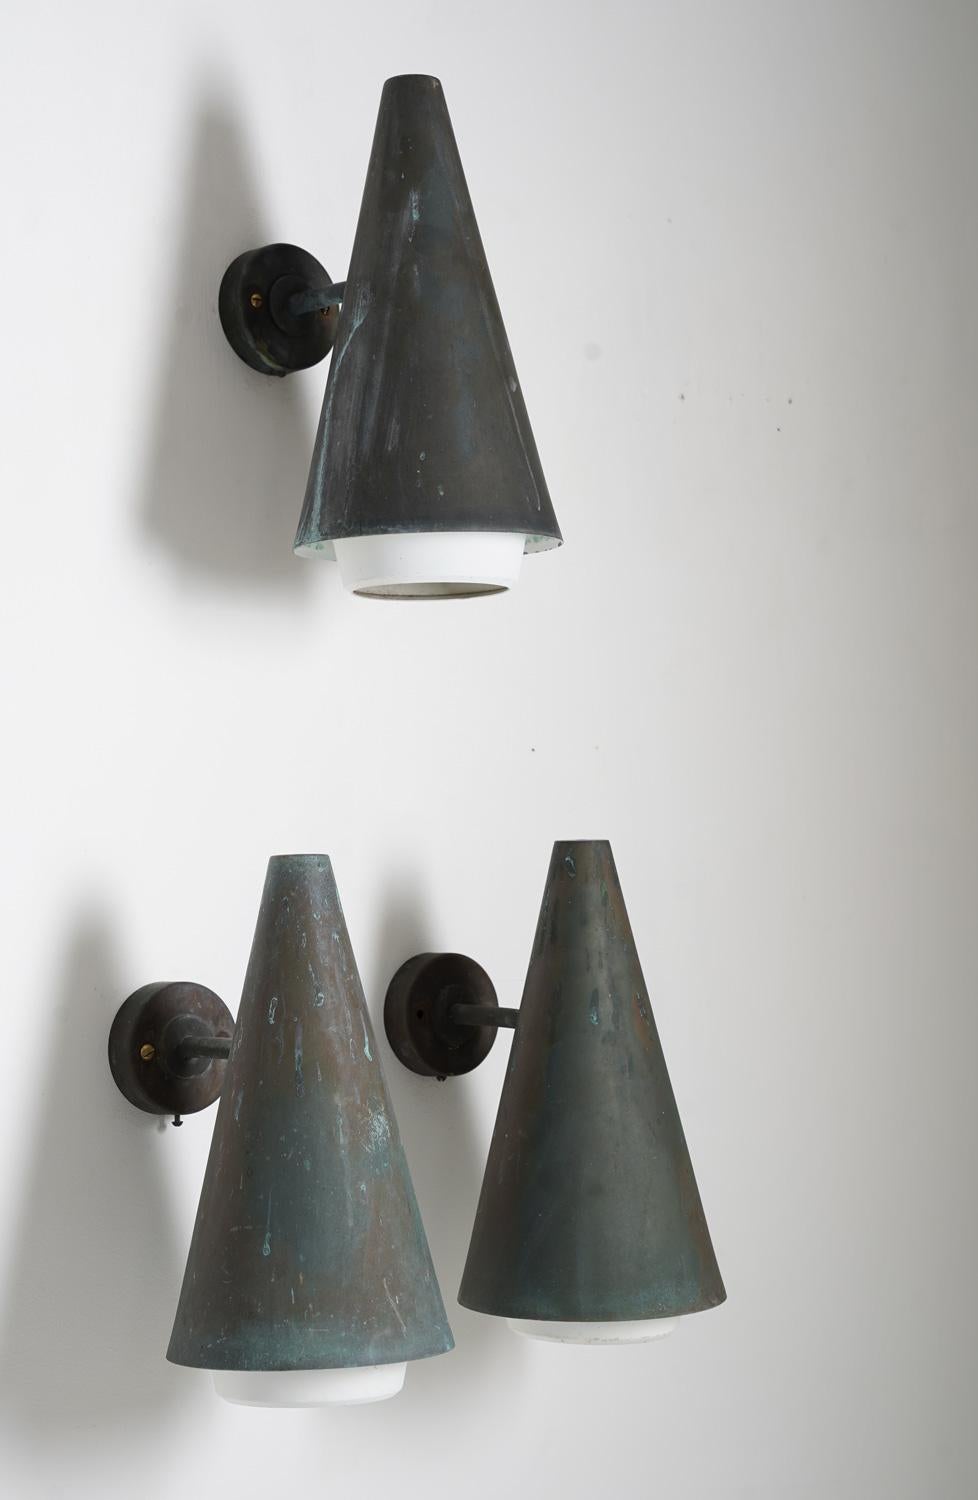 Sehr seltene Außenwandlampen von Hans-Agne Jakobsson, um 1960.

Diese Lampen sind aus massivem Kupfer mit Metalldiffusoren hergestellt

Zustand: Sehr guter Zustand mit toller Patina.

